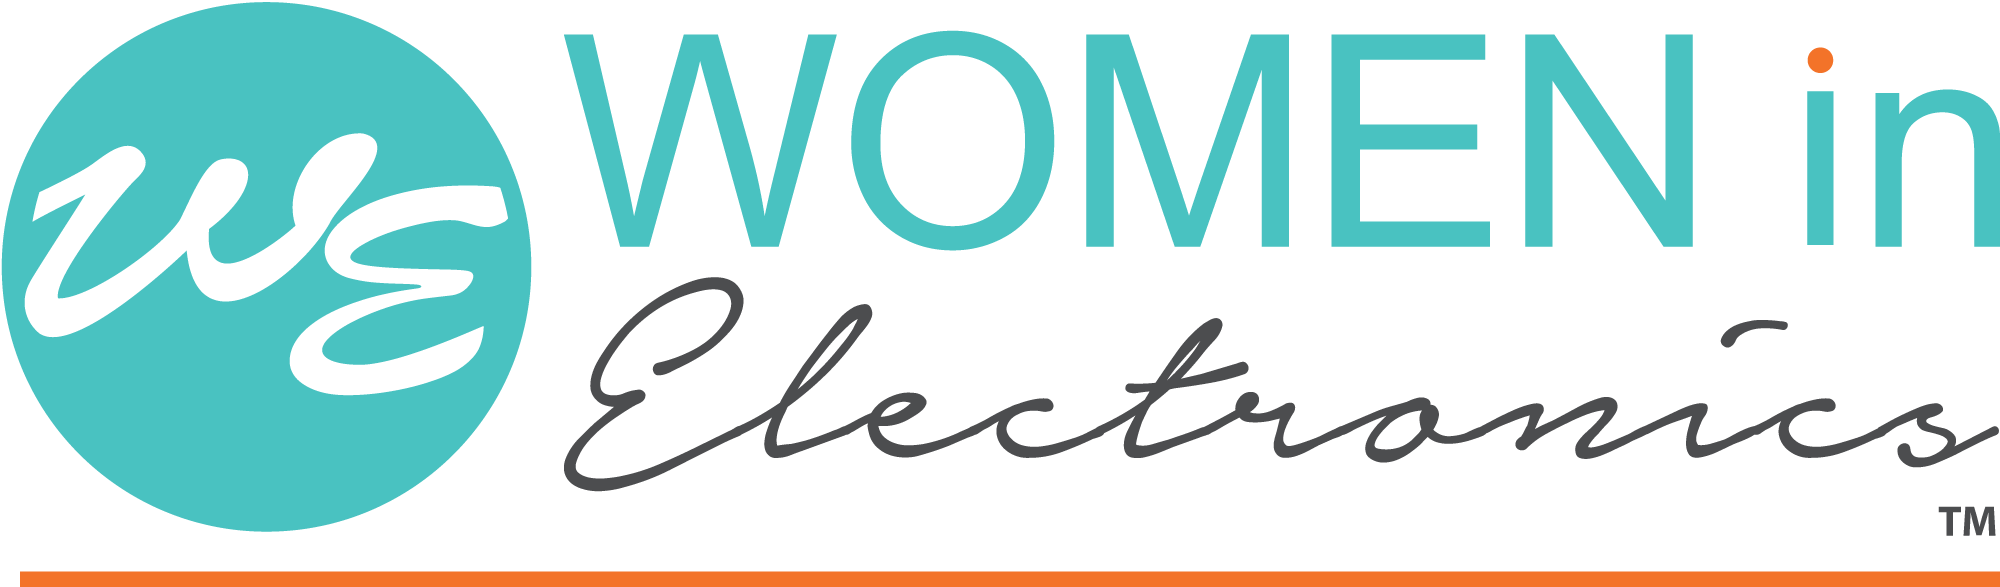 Women in Electronics Community